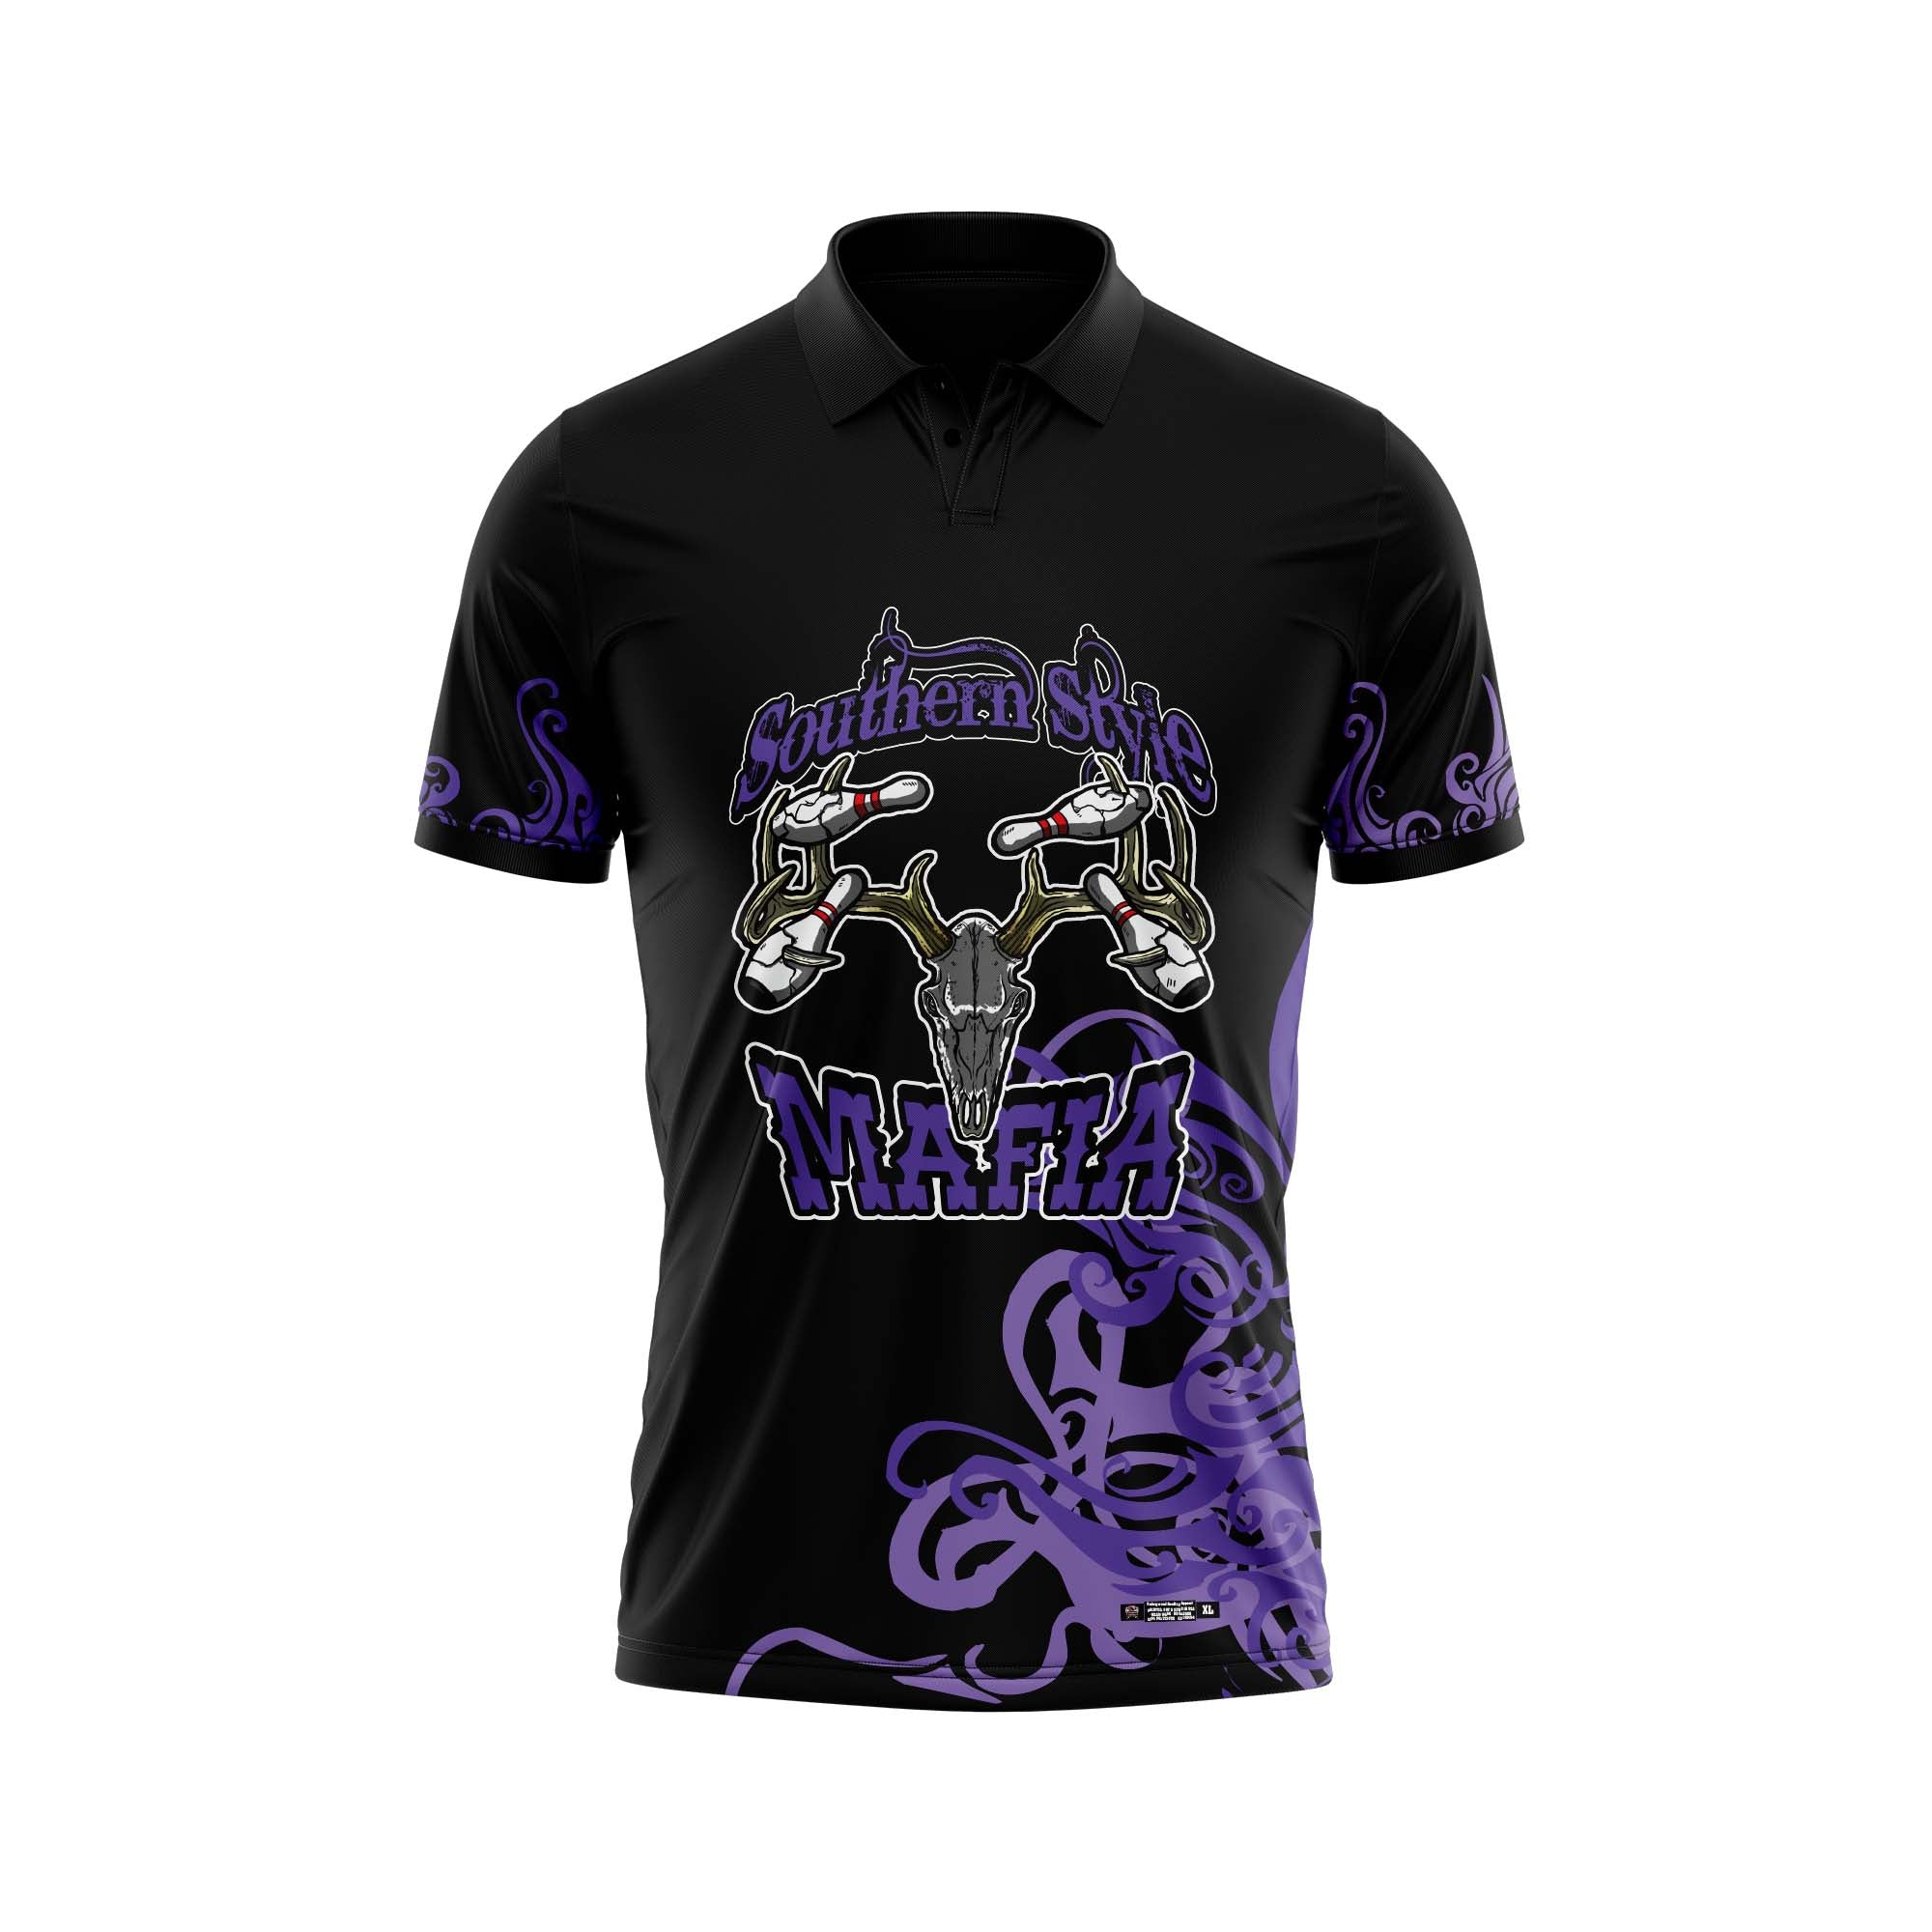 Southern Style Mafia Black / Purple Jersey